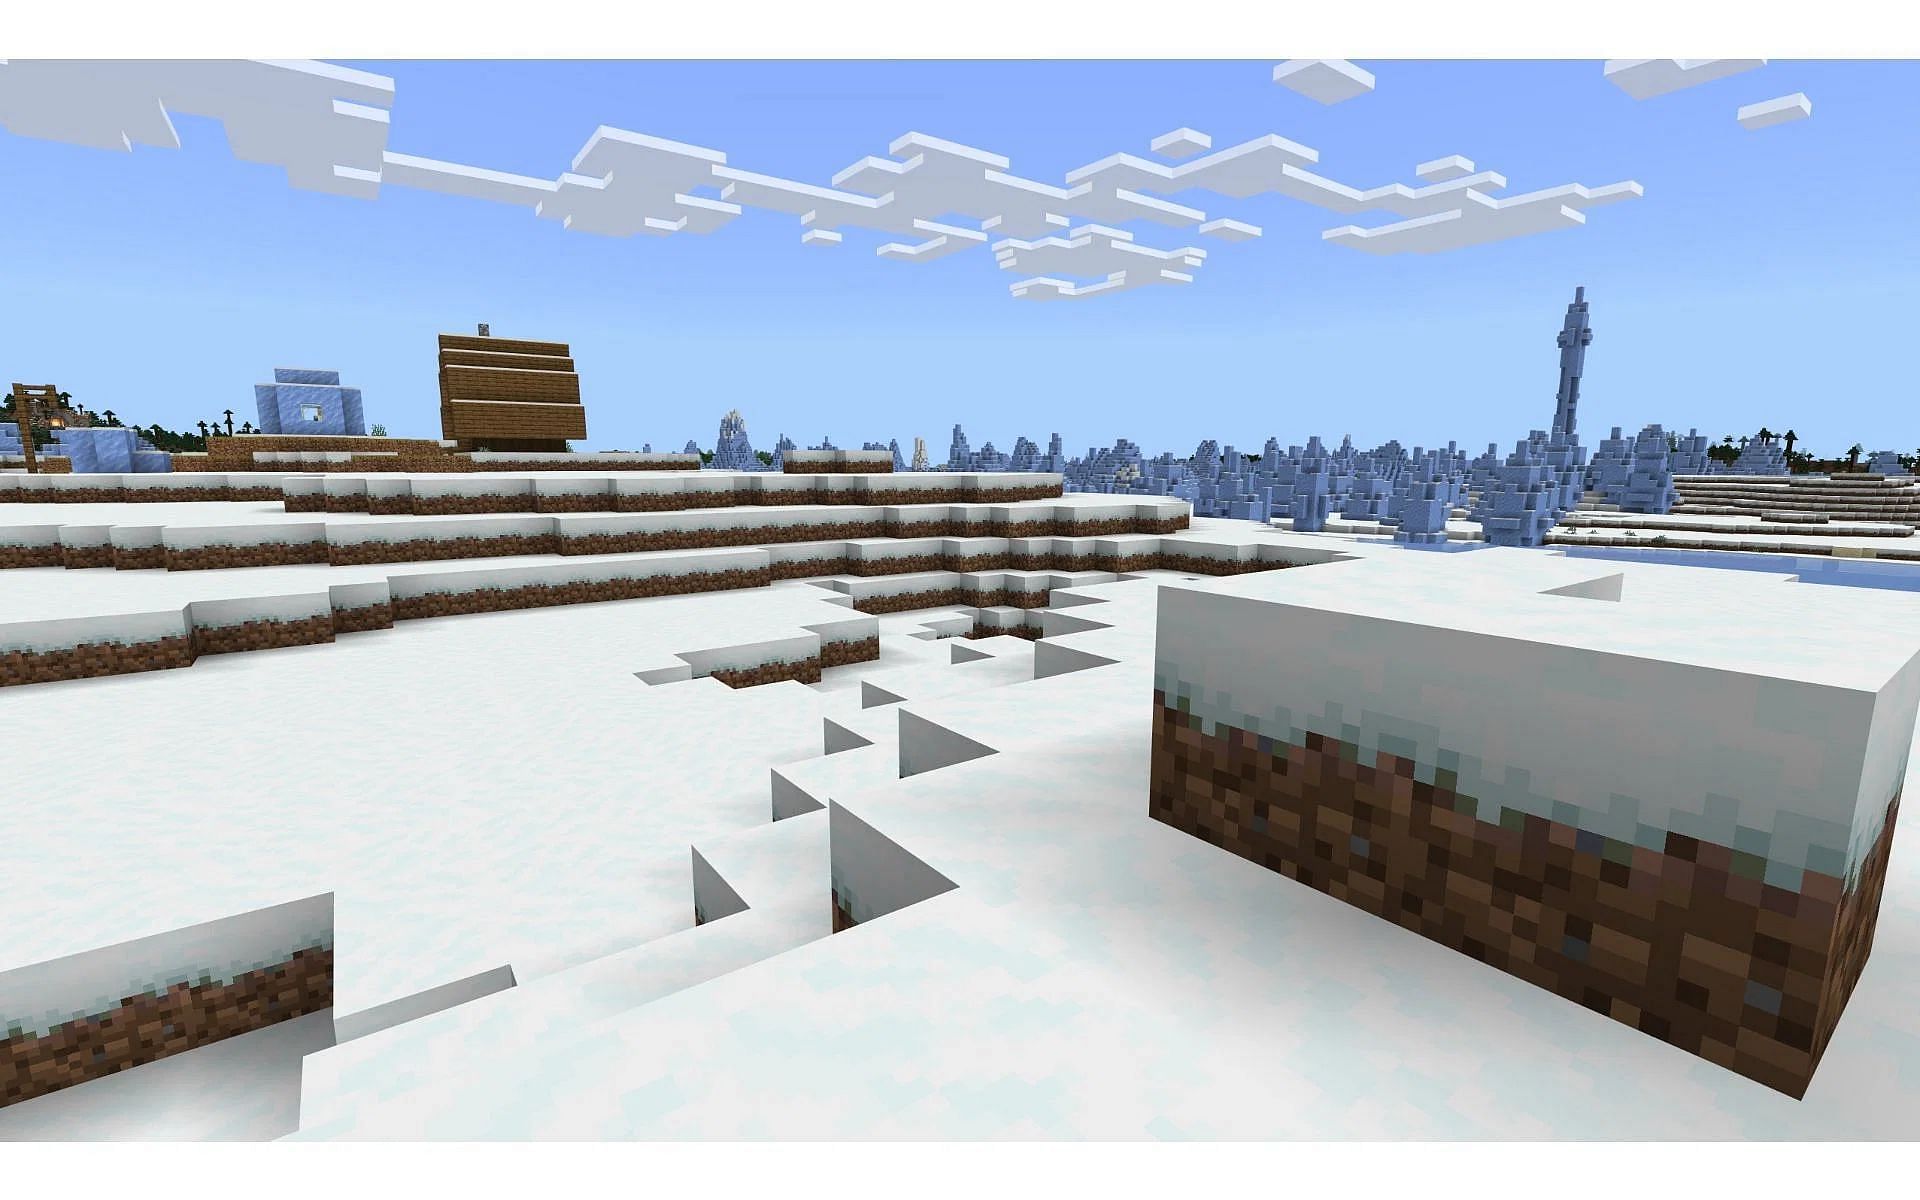 Best Minecraft snow seeds